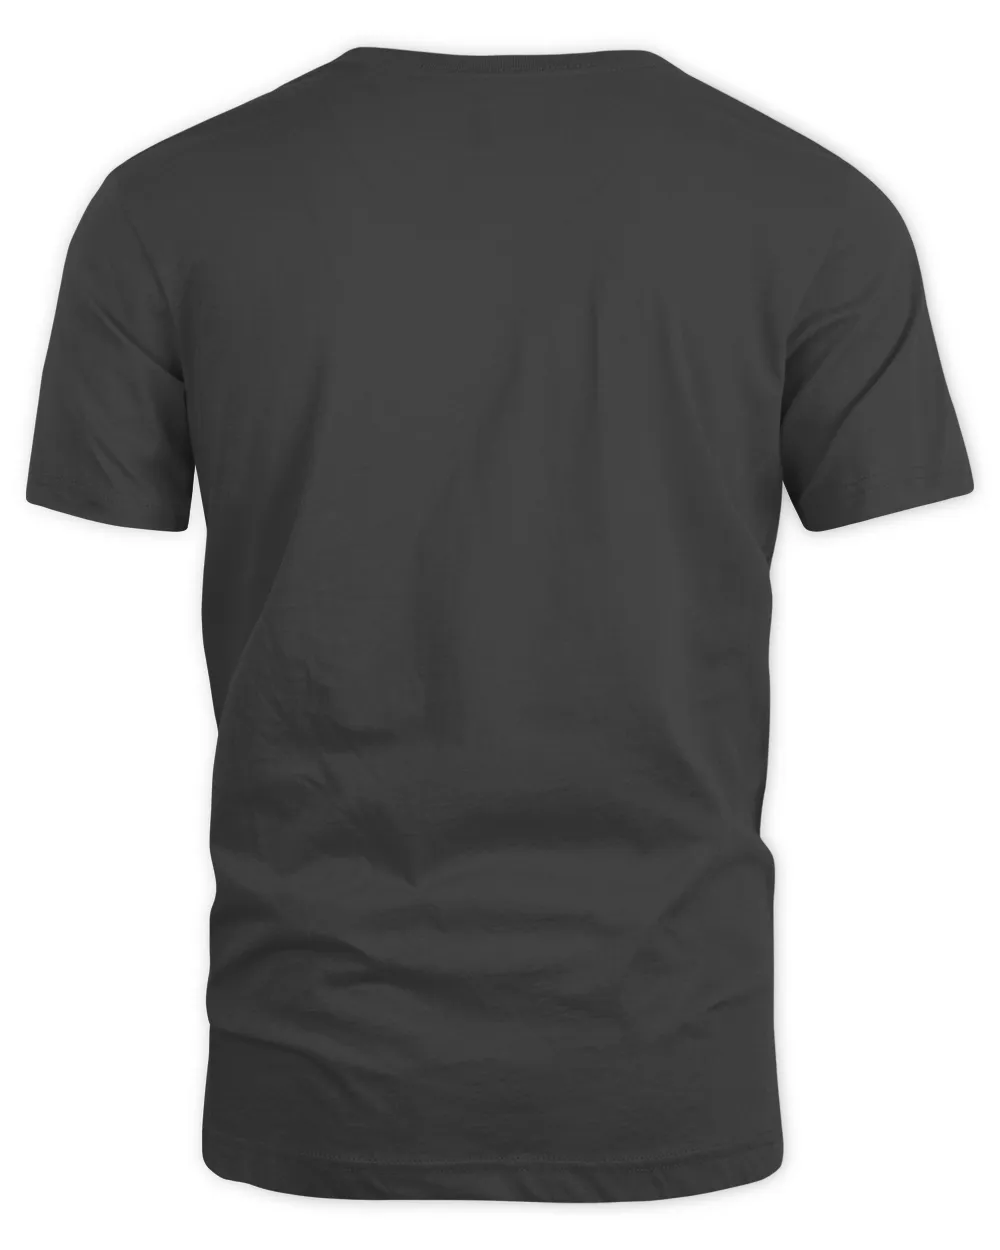 Viking raven T-Shirt